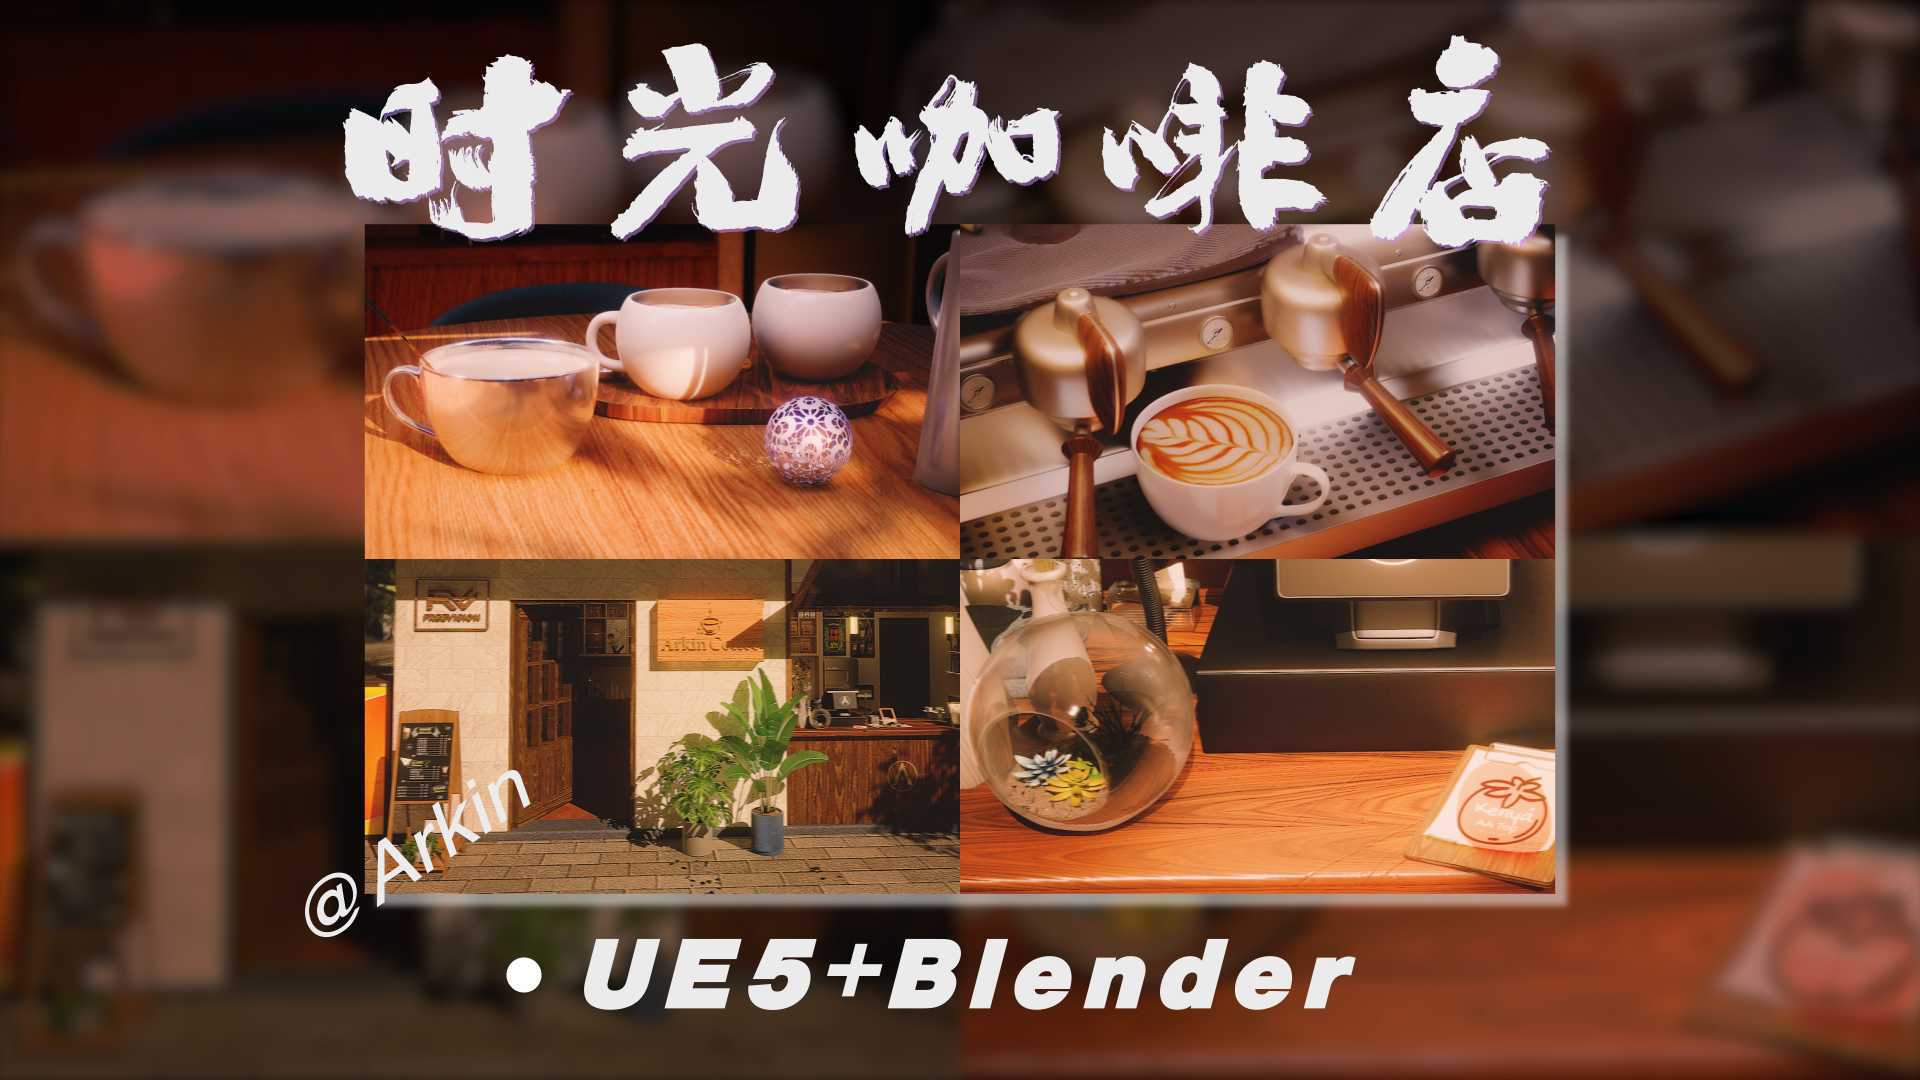 《时光咖啡店》CG渲染视频_UE5+Blender_Arkin